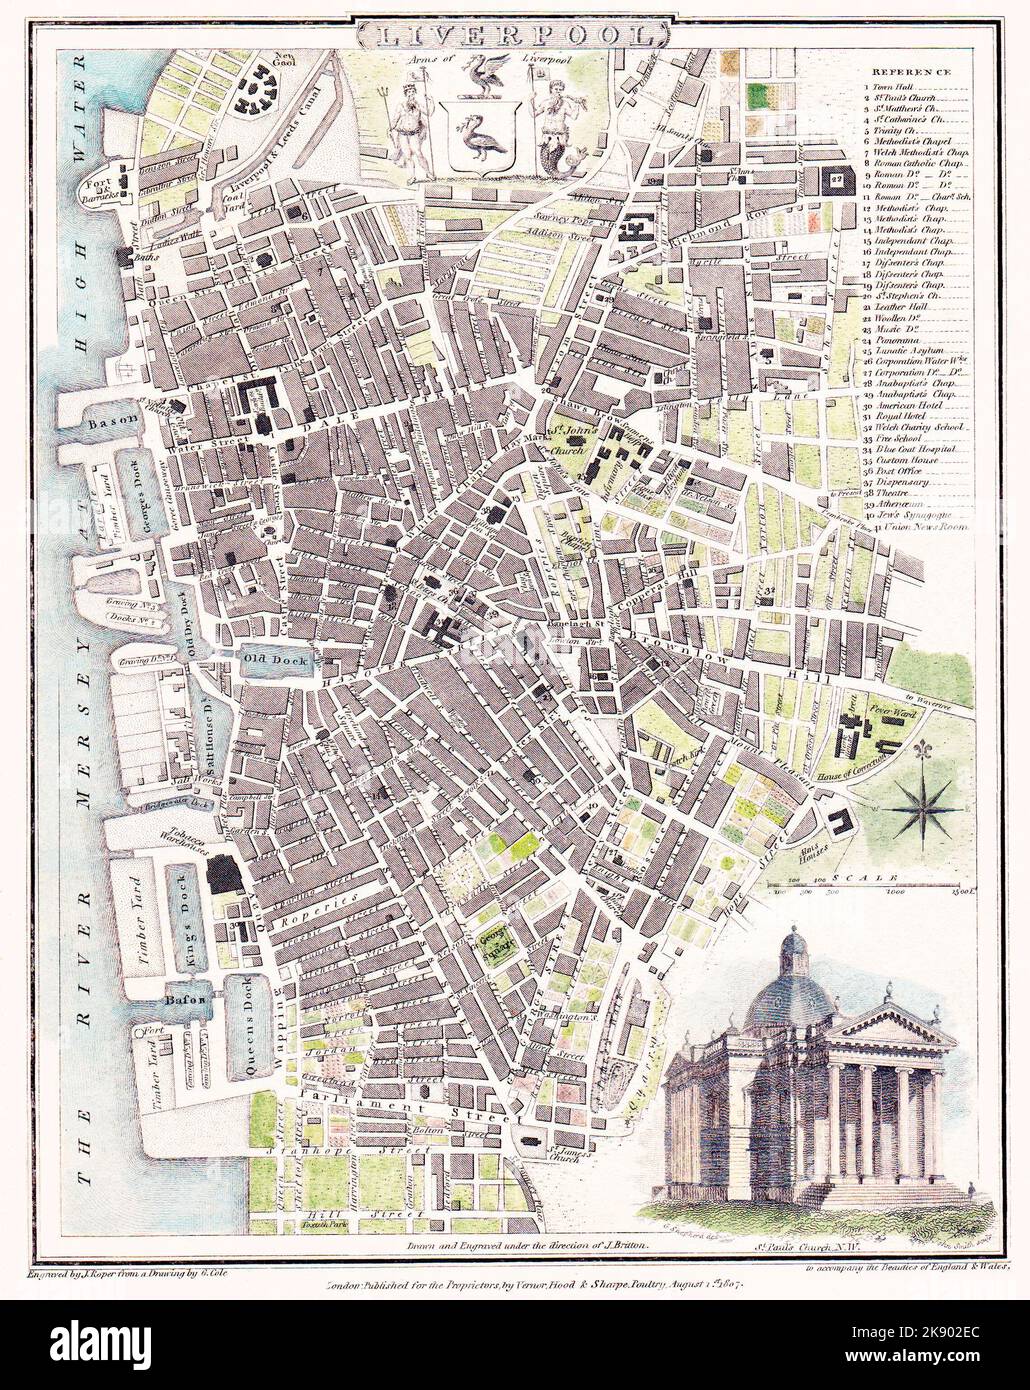 Die Karte von Liverpool von Roper & Cole im Jahr 1807, als es gerade an der Schwelle der Transformation von Stadt zu Stadt stand, mit den frühesten Vororten und nur zehn Docks. Die Hauptdekoration auf der Karte ist eine Gravur der St. Paul’s Church, die westlich der Eisenbahn stand, als sie in den Exchange Station eintritt. In der Mitte befindet sich das Wappen Liverpools. Es gibt zwei Lebervögel, die von Neptun und Triton flankiert werden und Flaggen eines anderen Lebervogels bzw. eines Schiffes halten. Erwähnt werden sollte auch ein Fort und eine Kaserne auf der Mersey, was die Bedrohung durch eine französische Invasion widerspiegelt. Stockfoto